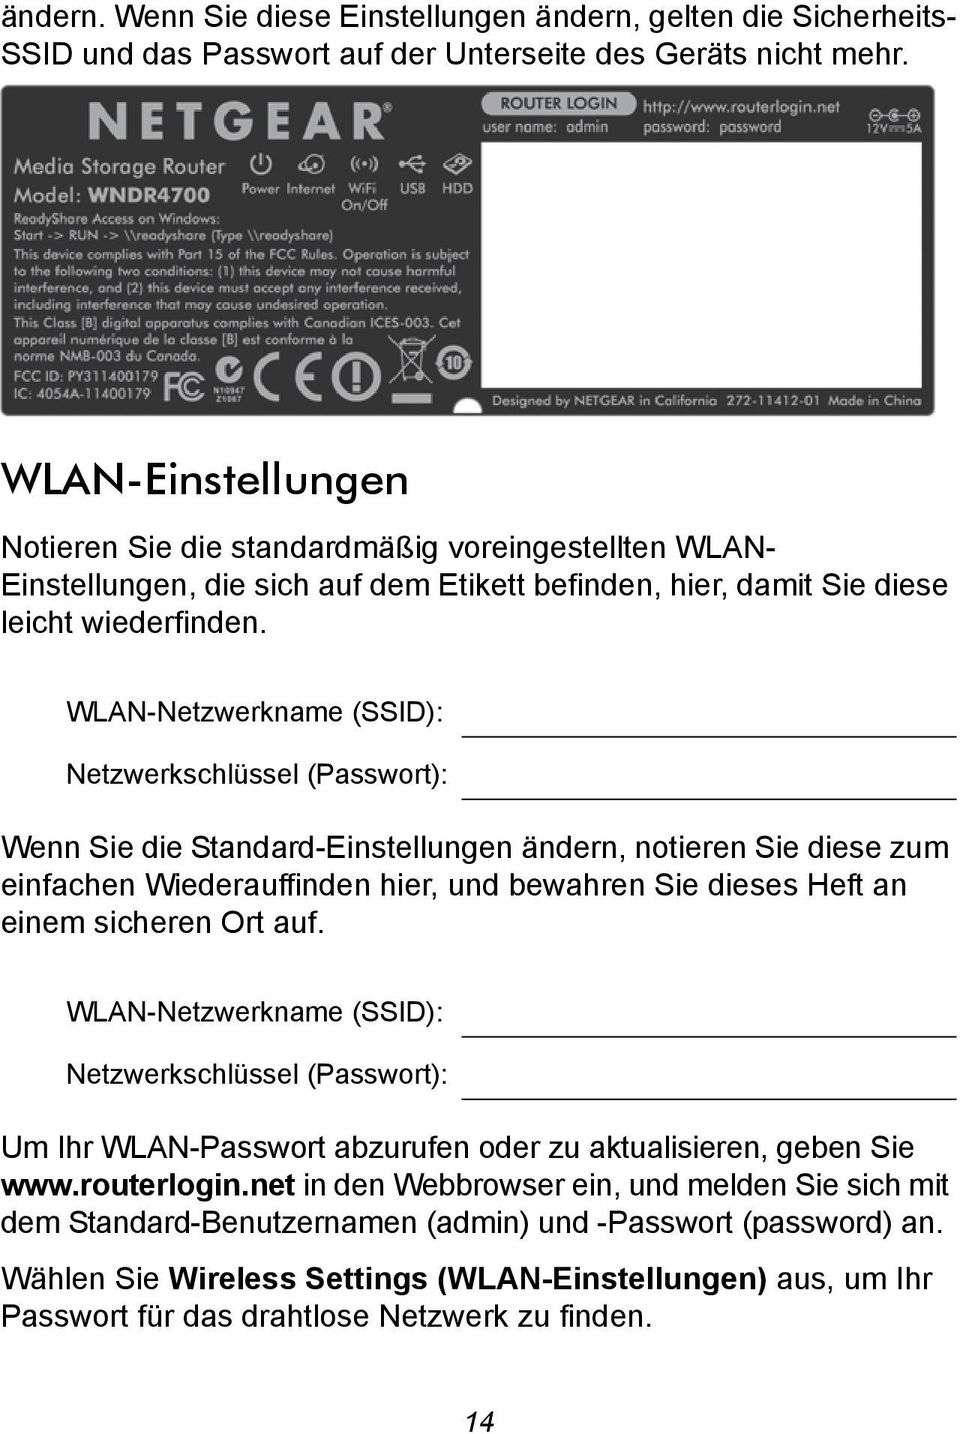 WLAN-Netzwerkname (SSID): Netzwerkschlüssel (Passwort): Wenn Sie die Standard-Einstellungen ändern, notieren Sie diese zum einfachen Wiederauffinden hier, und bewahren Sie dieses Heft an einem